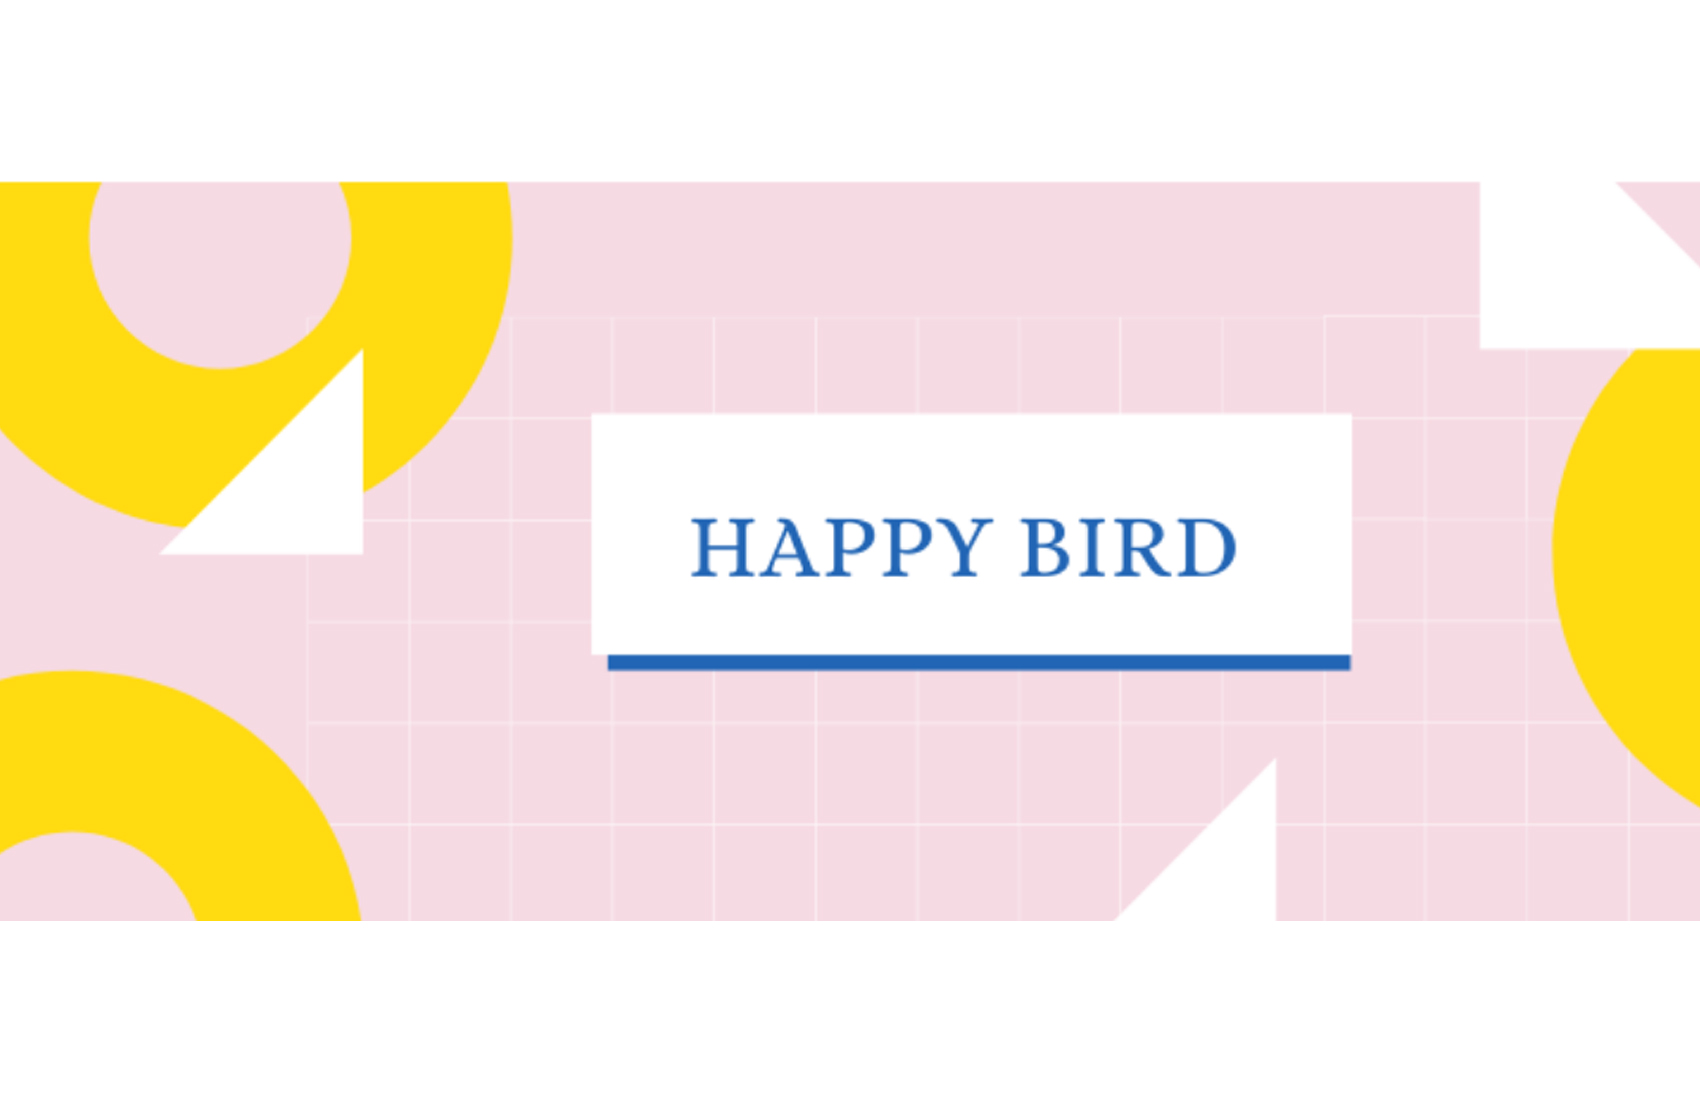 Happy bird